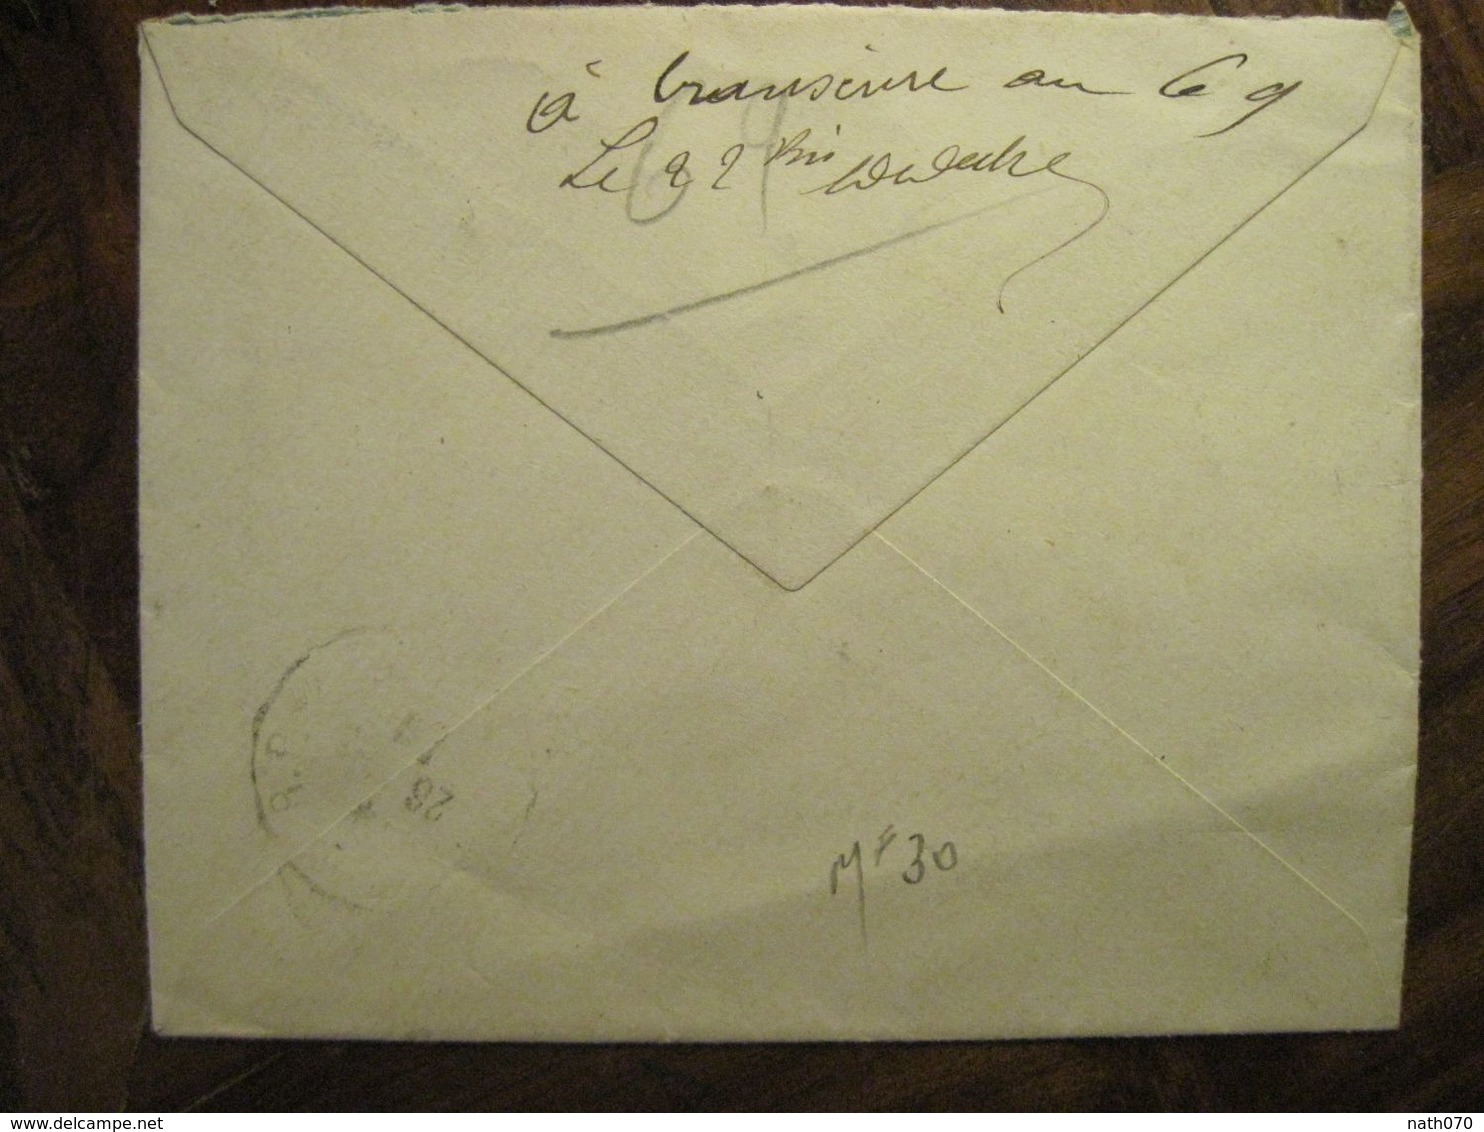 Cote D'Ivoire 1920 France Grand Bassam Lettre Enveloppe Cover Colonie Recommandé Reco AOF Taffin Lefort - Storia Postale